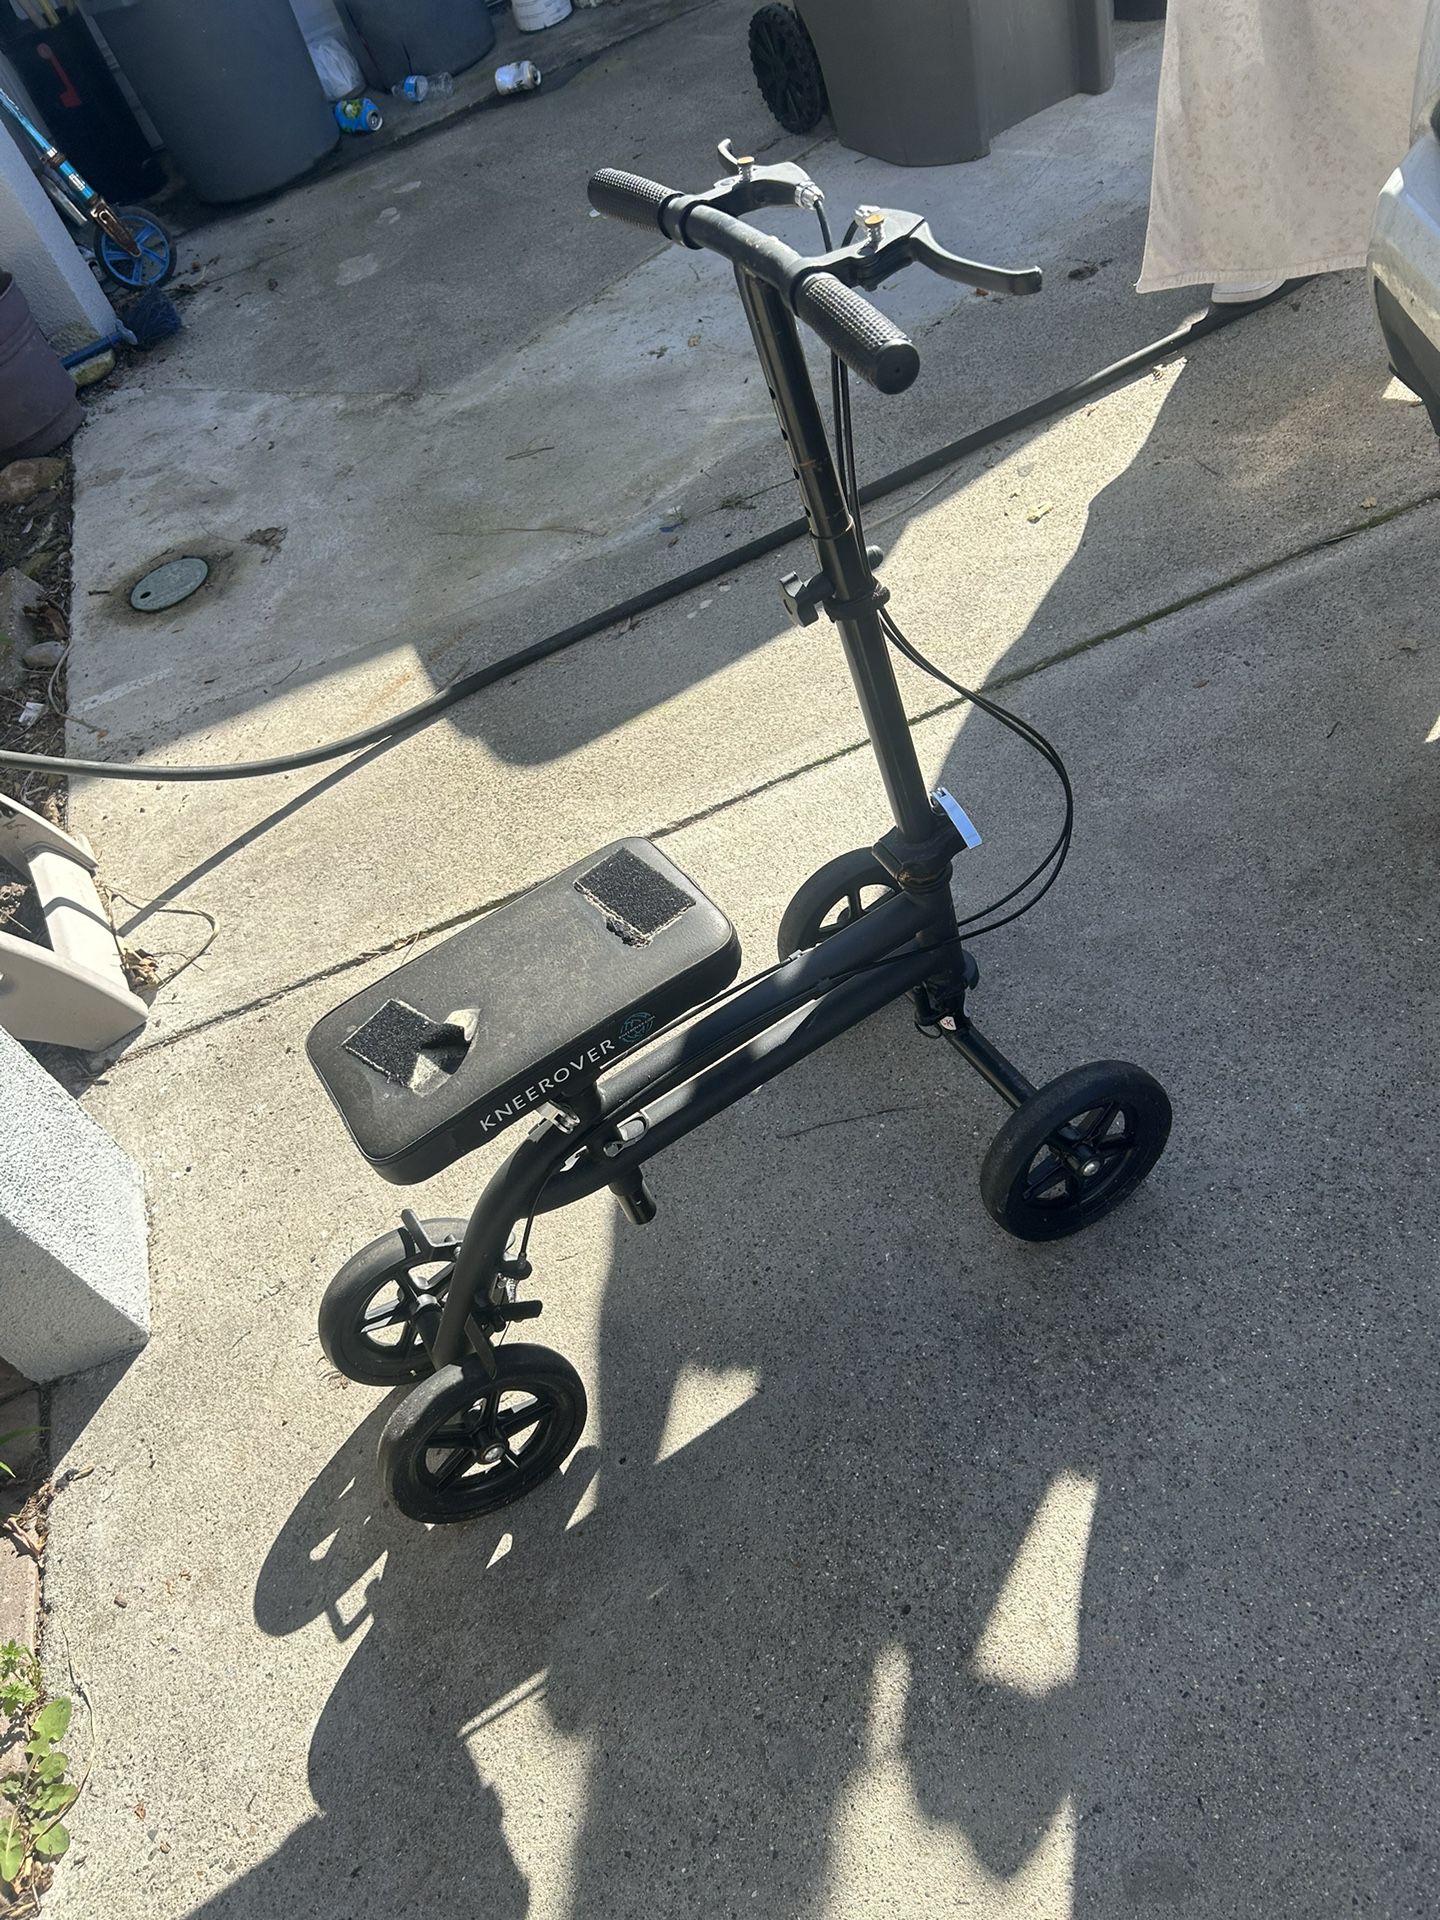 Crutch Scooter